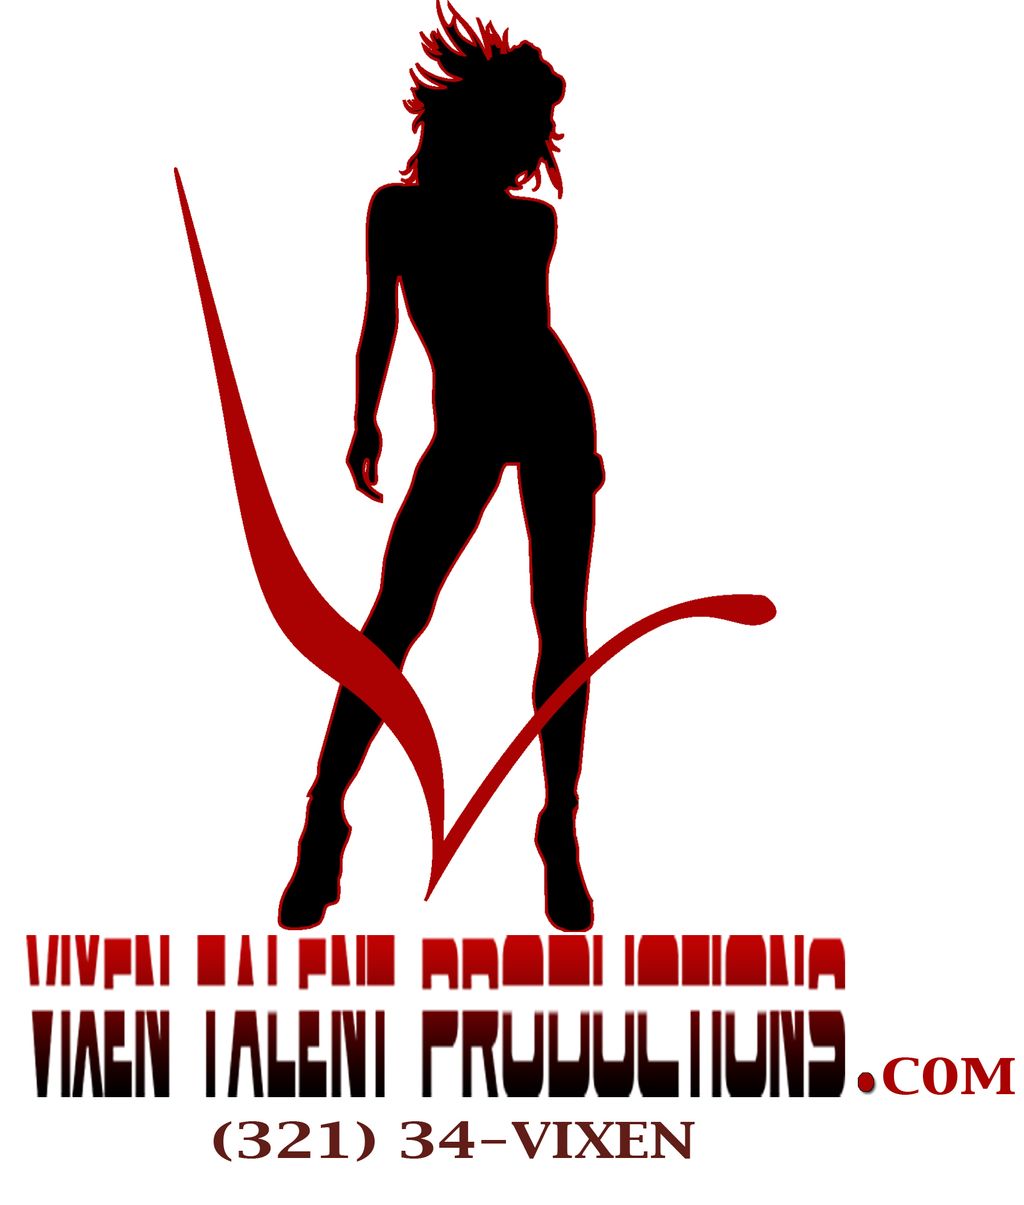 Vixen Talent Productions Inc.